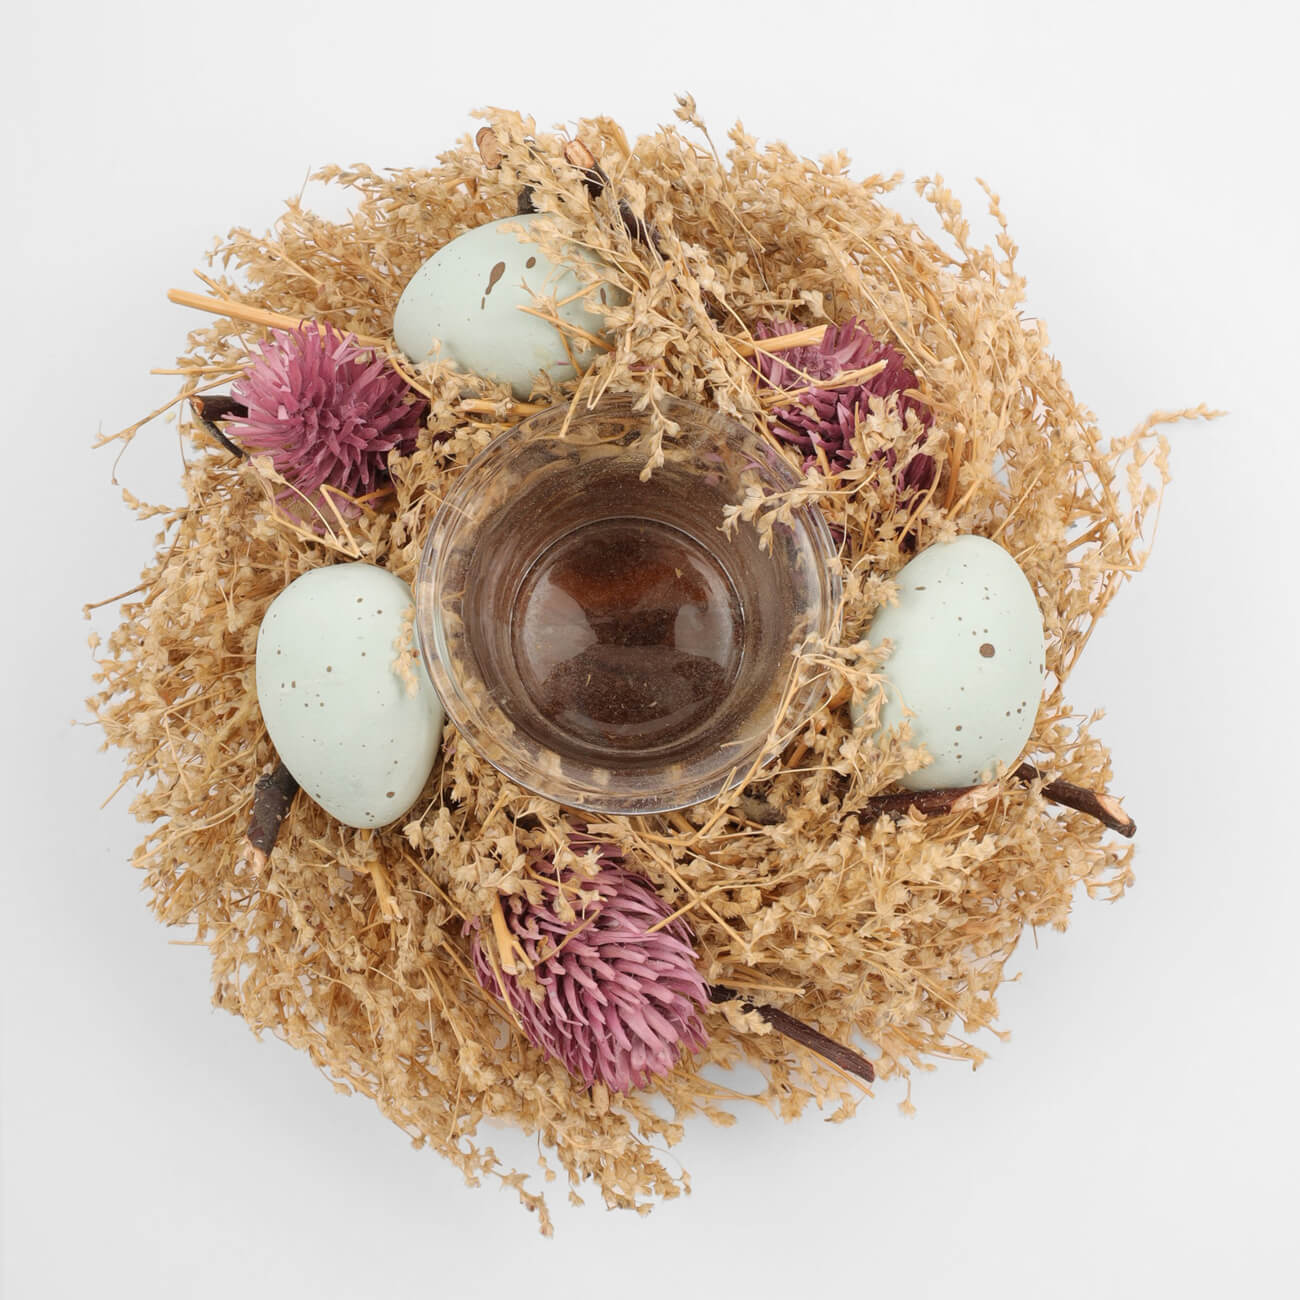 Подсвечник, 18 см, для чайной свечи, стекло/сухоцветы, Полевой венок, Natural Easter decor подставка для яиц 14х10 см 6 отд прямоугольная дерево natural easter